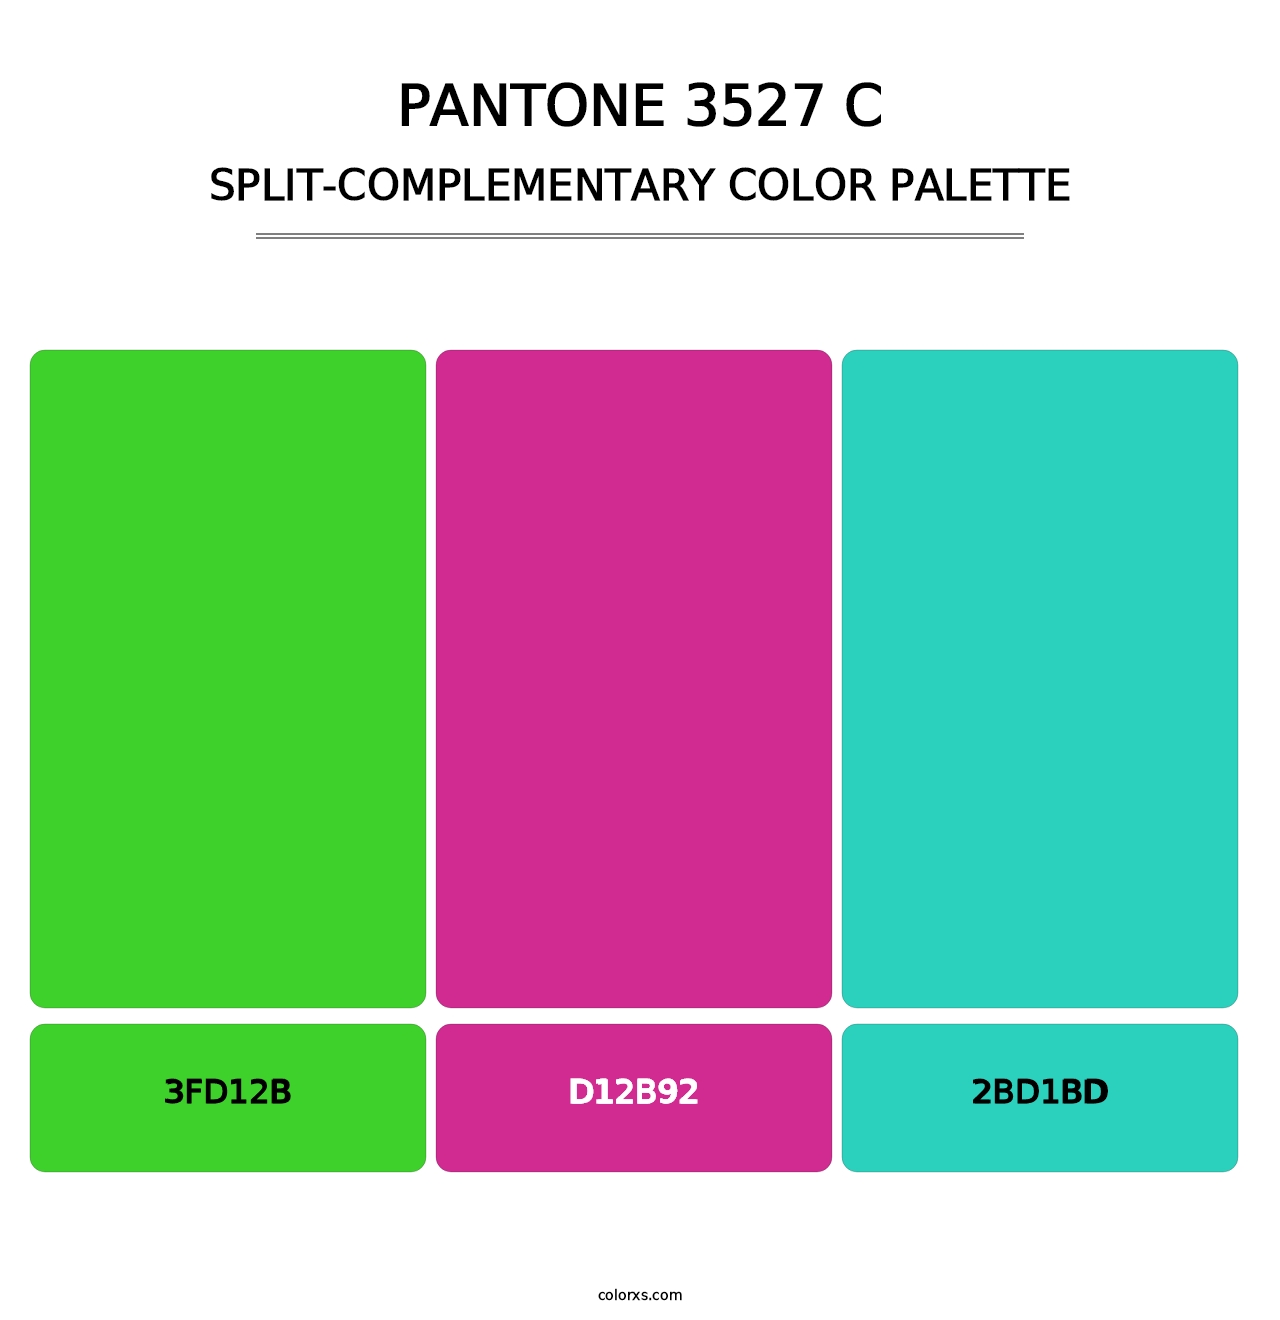 PANTONE 3527 C - Split-Complementary Color Palette